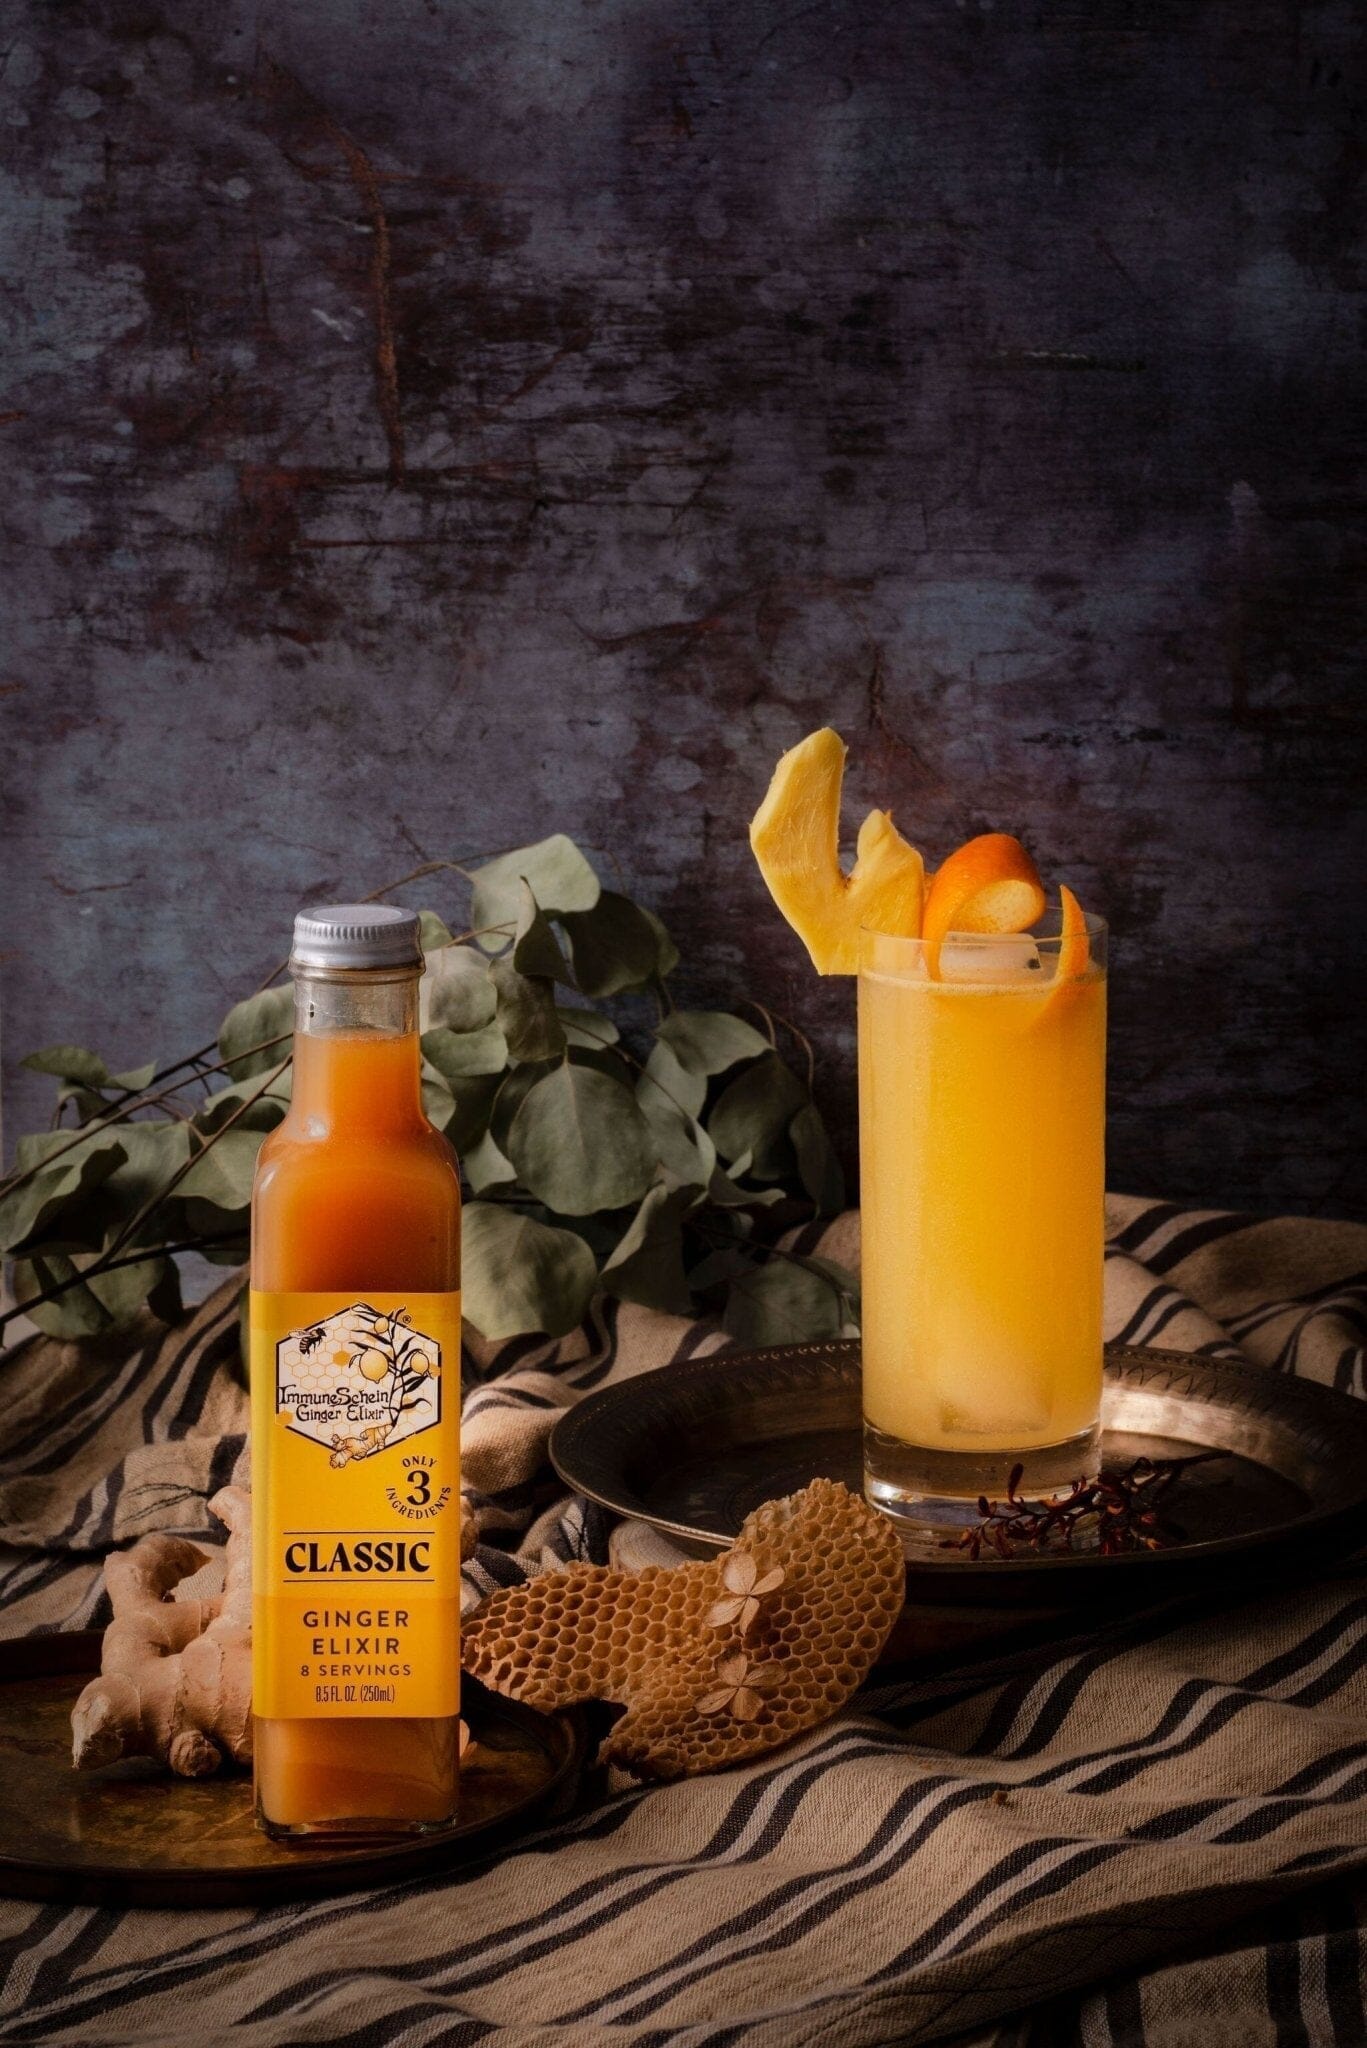 
                  
                    Case mix & match Ginger Elixir, 12 x 8.5 oz. Bottles (Get 5% off at Checkout!) Ginger Elixir ImmuneSchein Ginger Elixirs 
                  
                